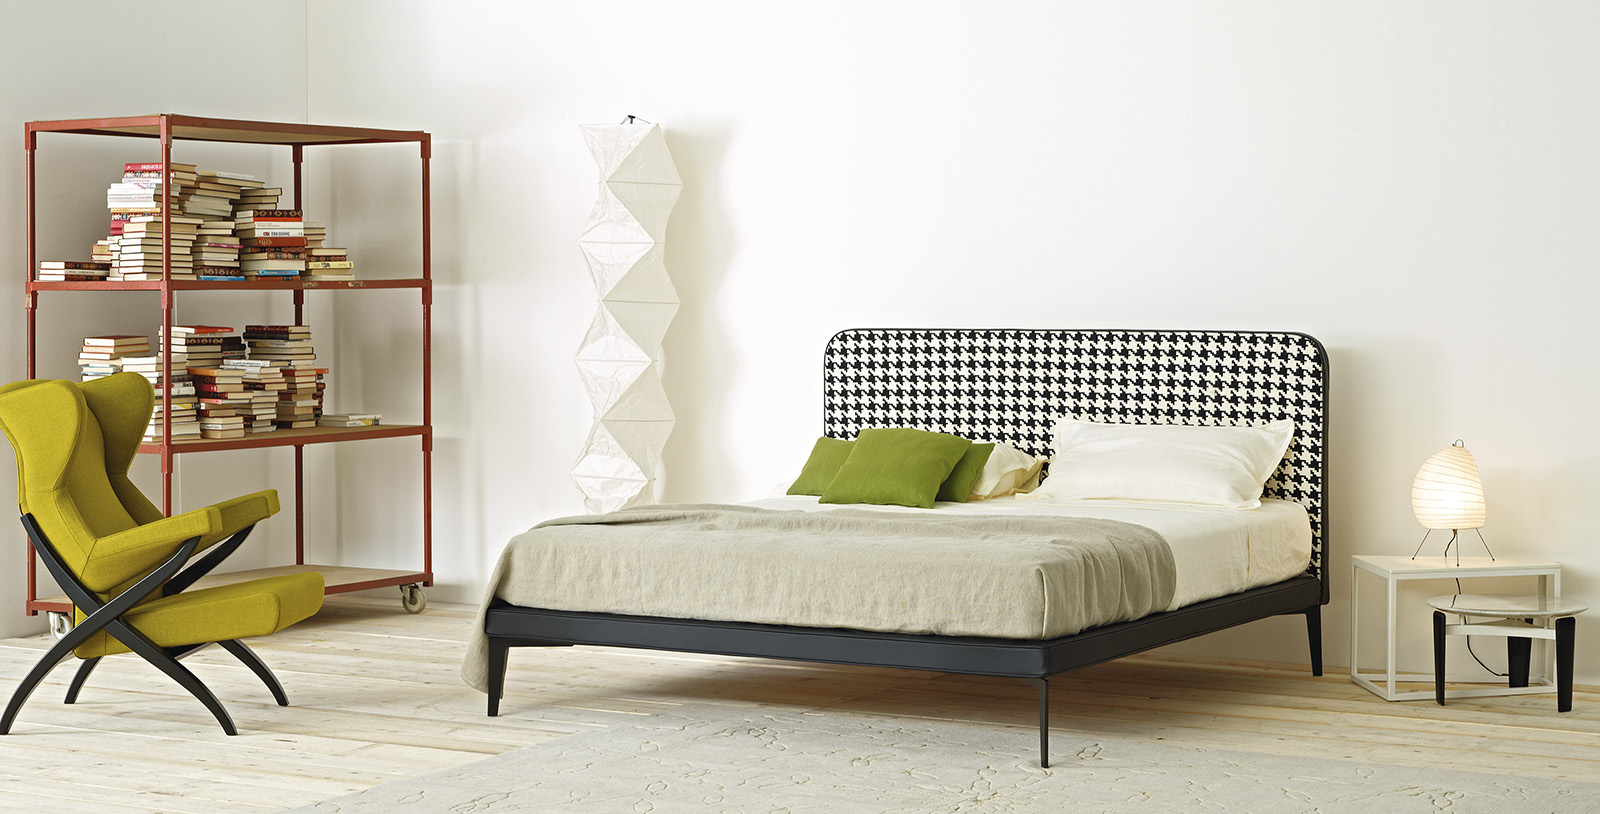 arflex-Suite-cama-estofado-cabeceira-design-Bernhardt-Vella-removível-único-duplo-quarto-hospitalidade-projeto-personalizável-luxo-madeinitaly-moderno-contemporâneo